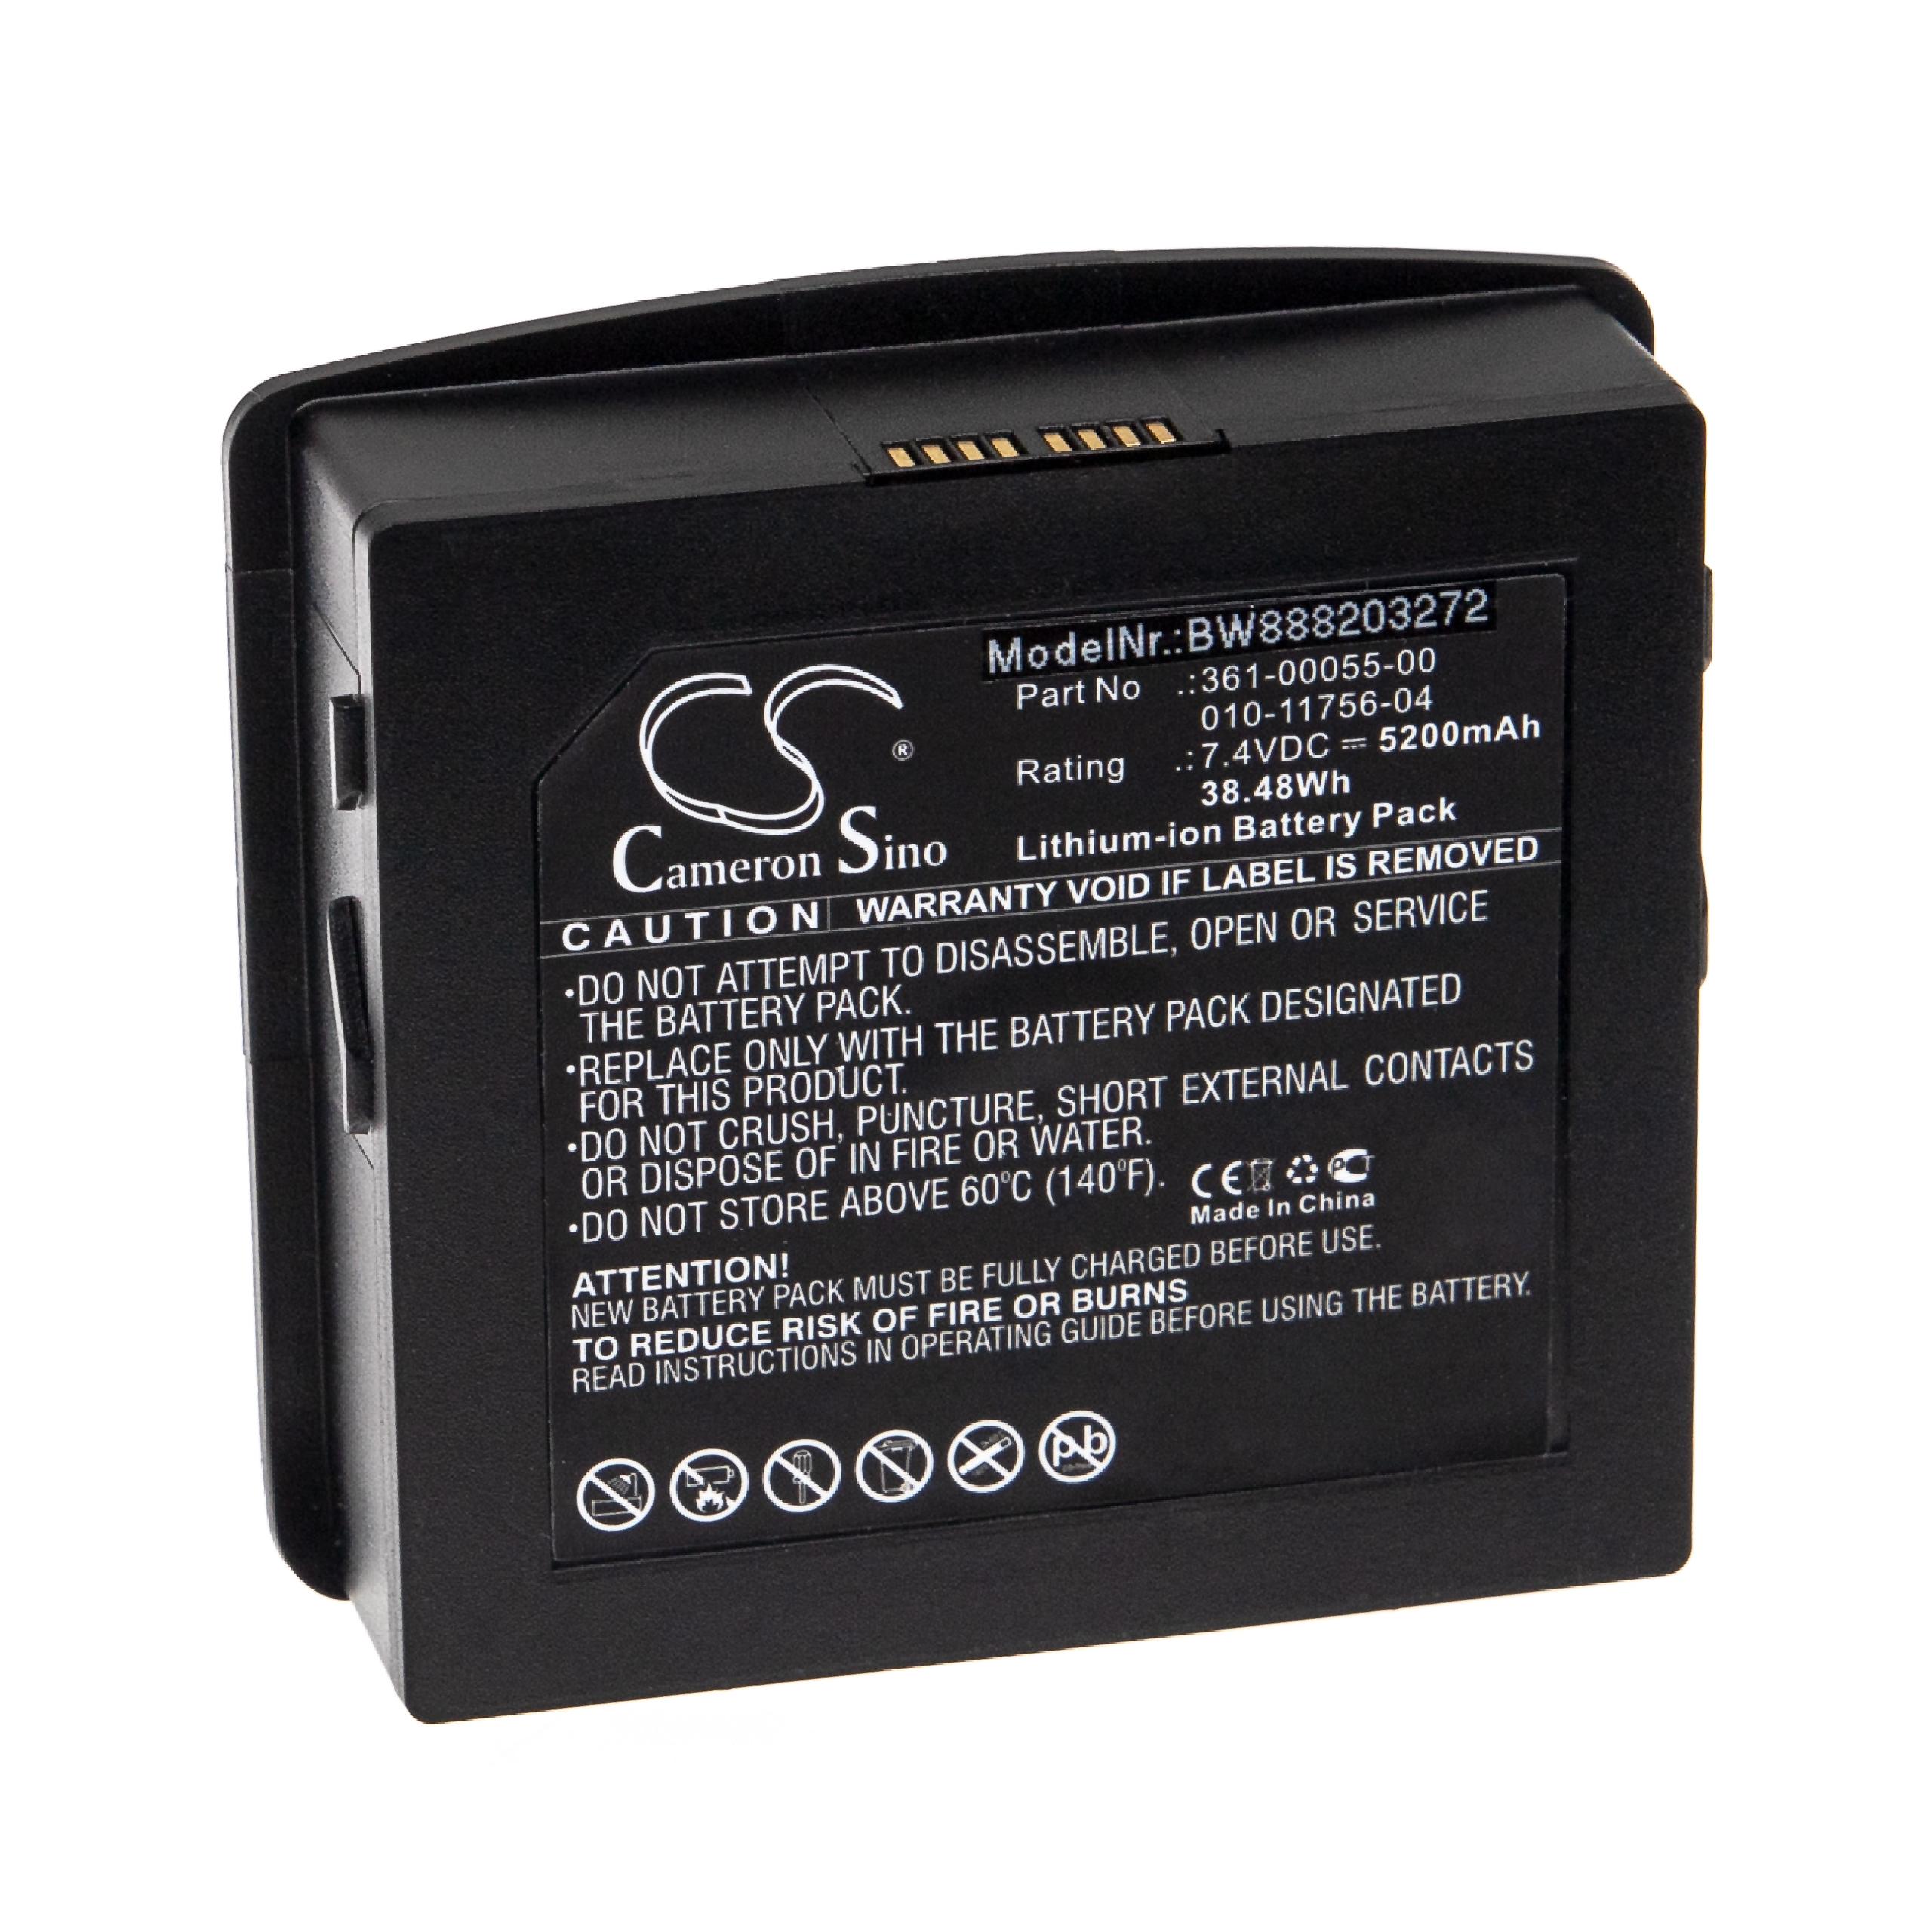 Batteria sostituisce Garmin 361-00055-00, 010-11756-04 per navigatore Garmin - 5200mAh 7,4V Li-Ion